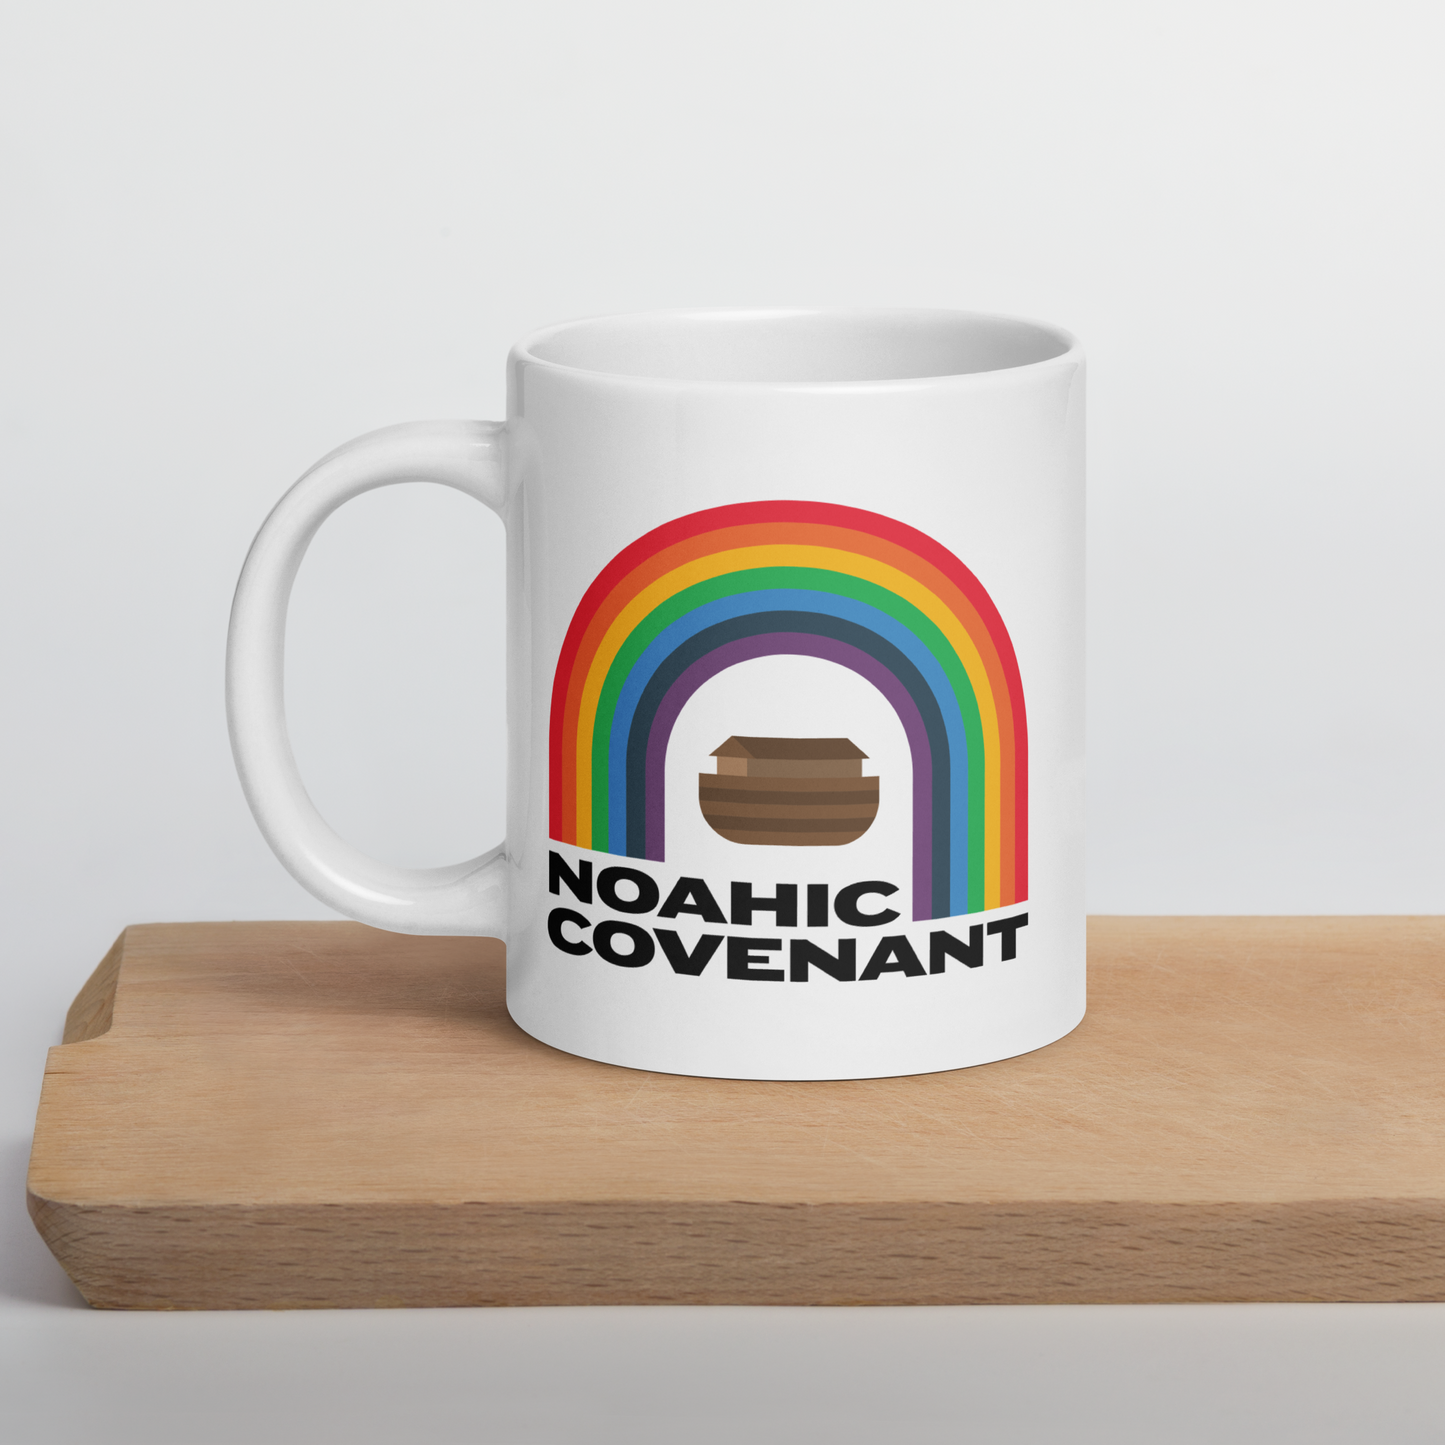 Noahic Covenant Mug